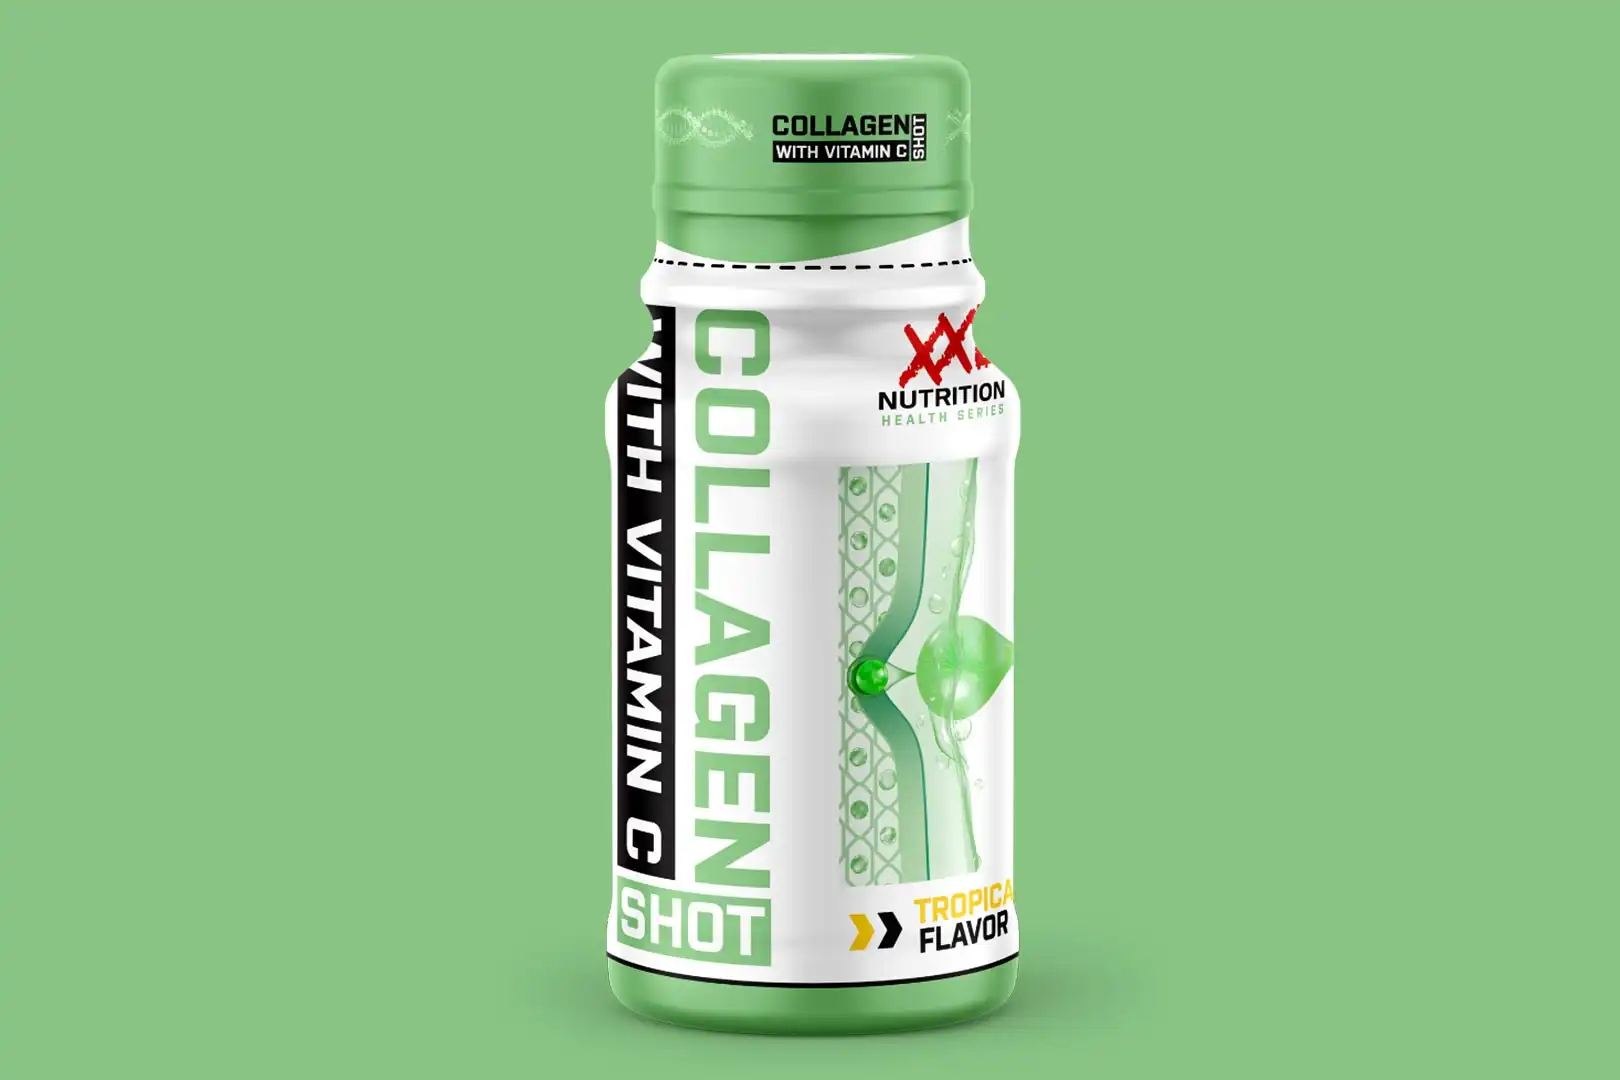 xxl-nutrition-collagen-shot.jpg